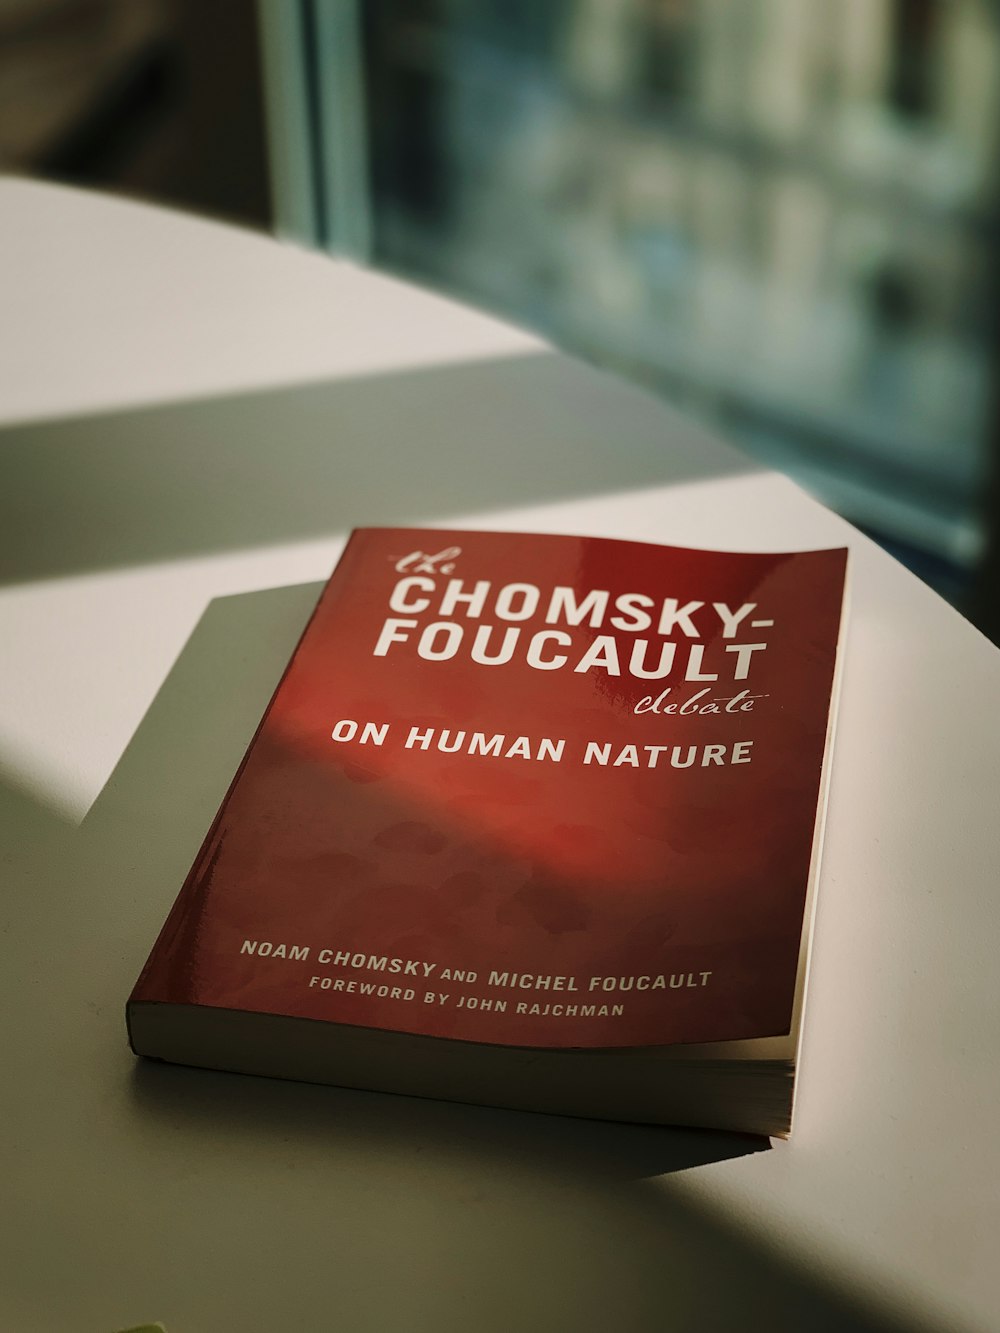 Chomsky Foucault book on table